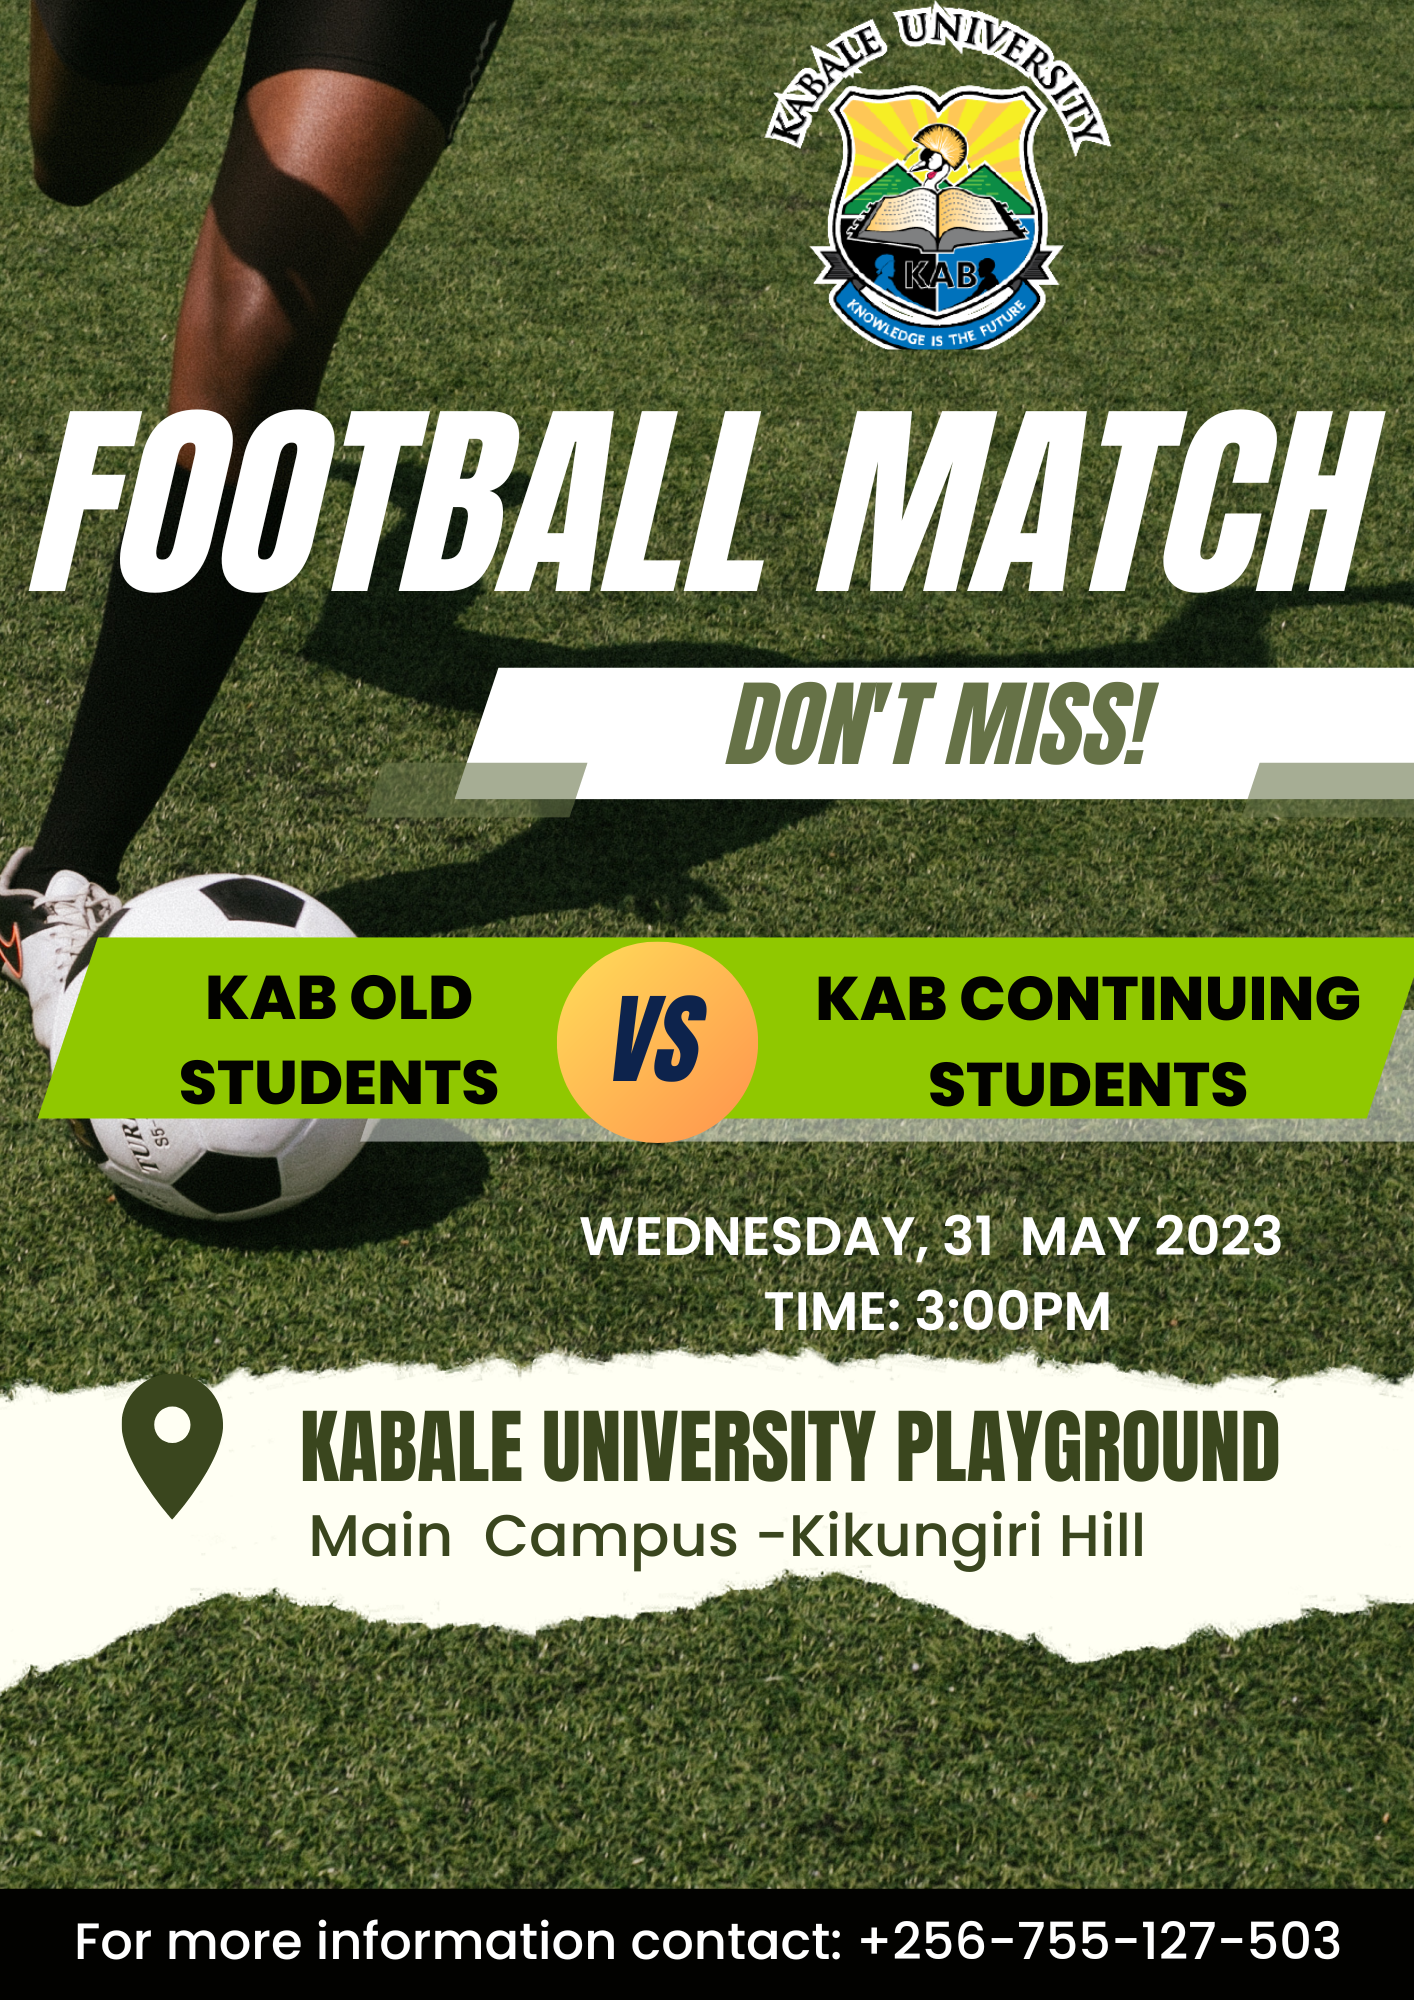 KAB Old Students VS KAB Continuing Students Football Match